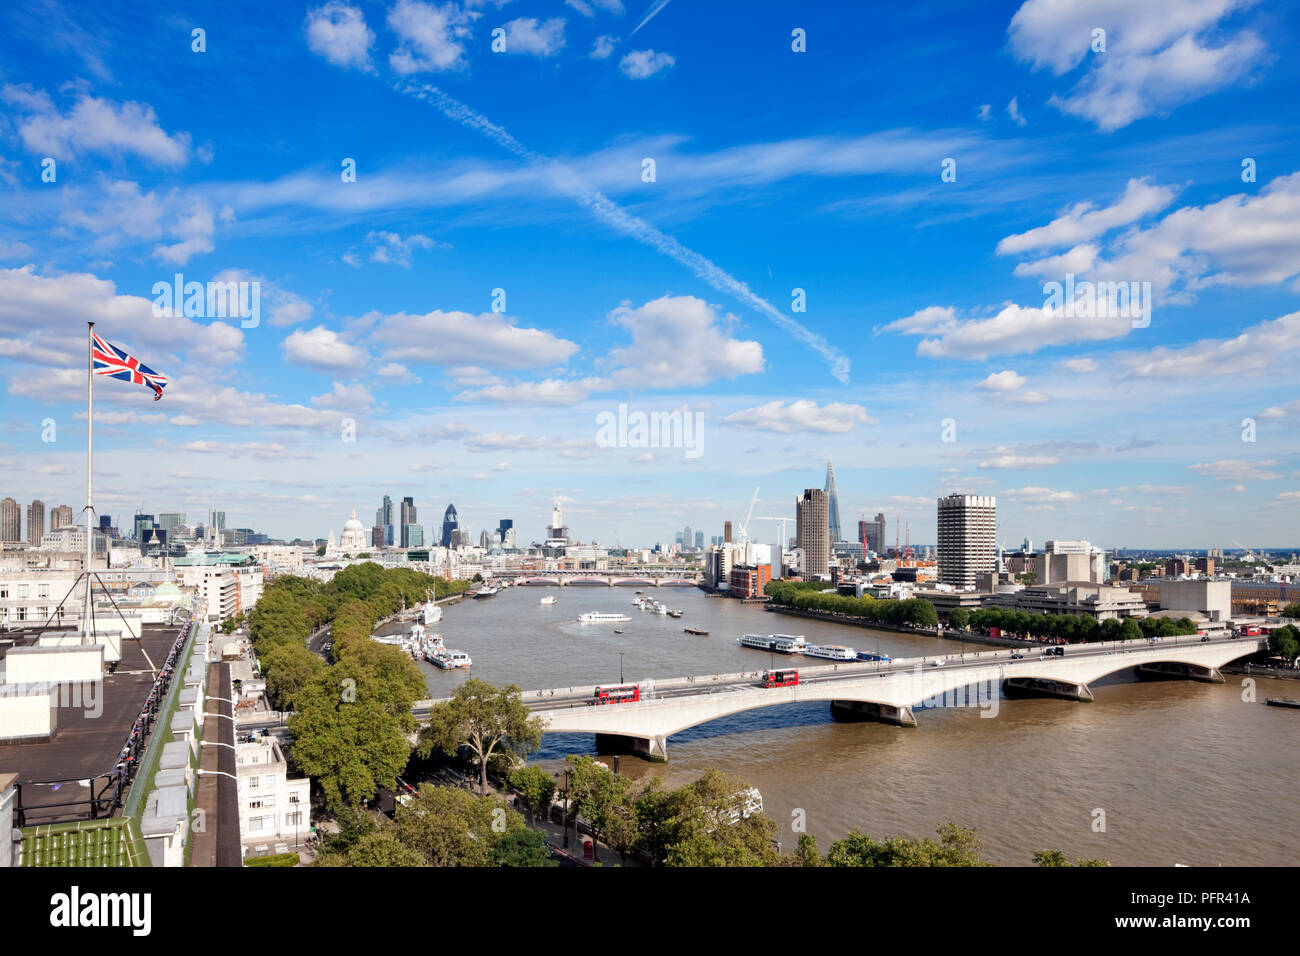 Gran Bretagna, Inghilterra, Londra, vista in elevazione della skyline della città, il tetto del Savoy Hotel sulla sinistra, Waterloo Bridge in primo piano Foto Stock